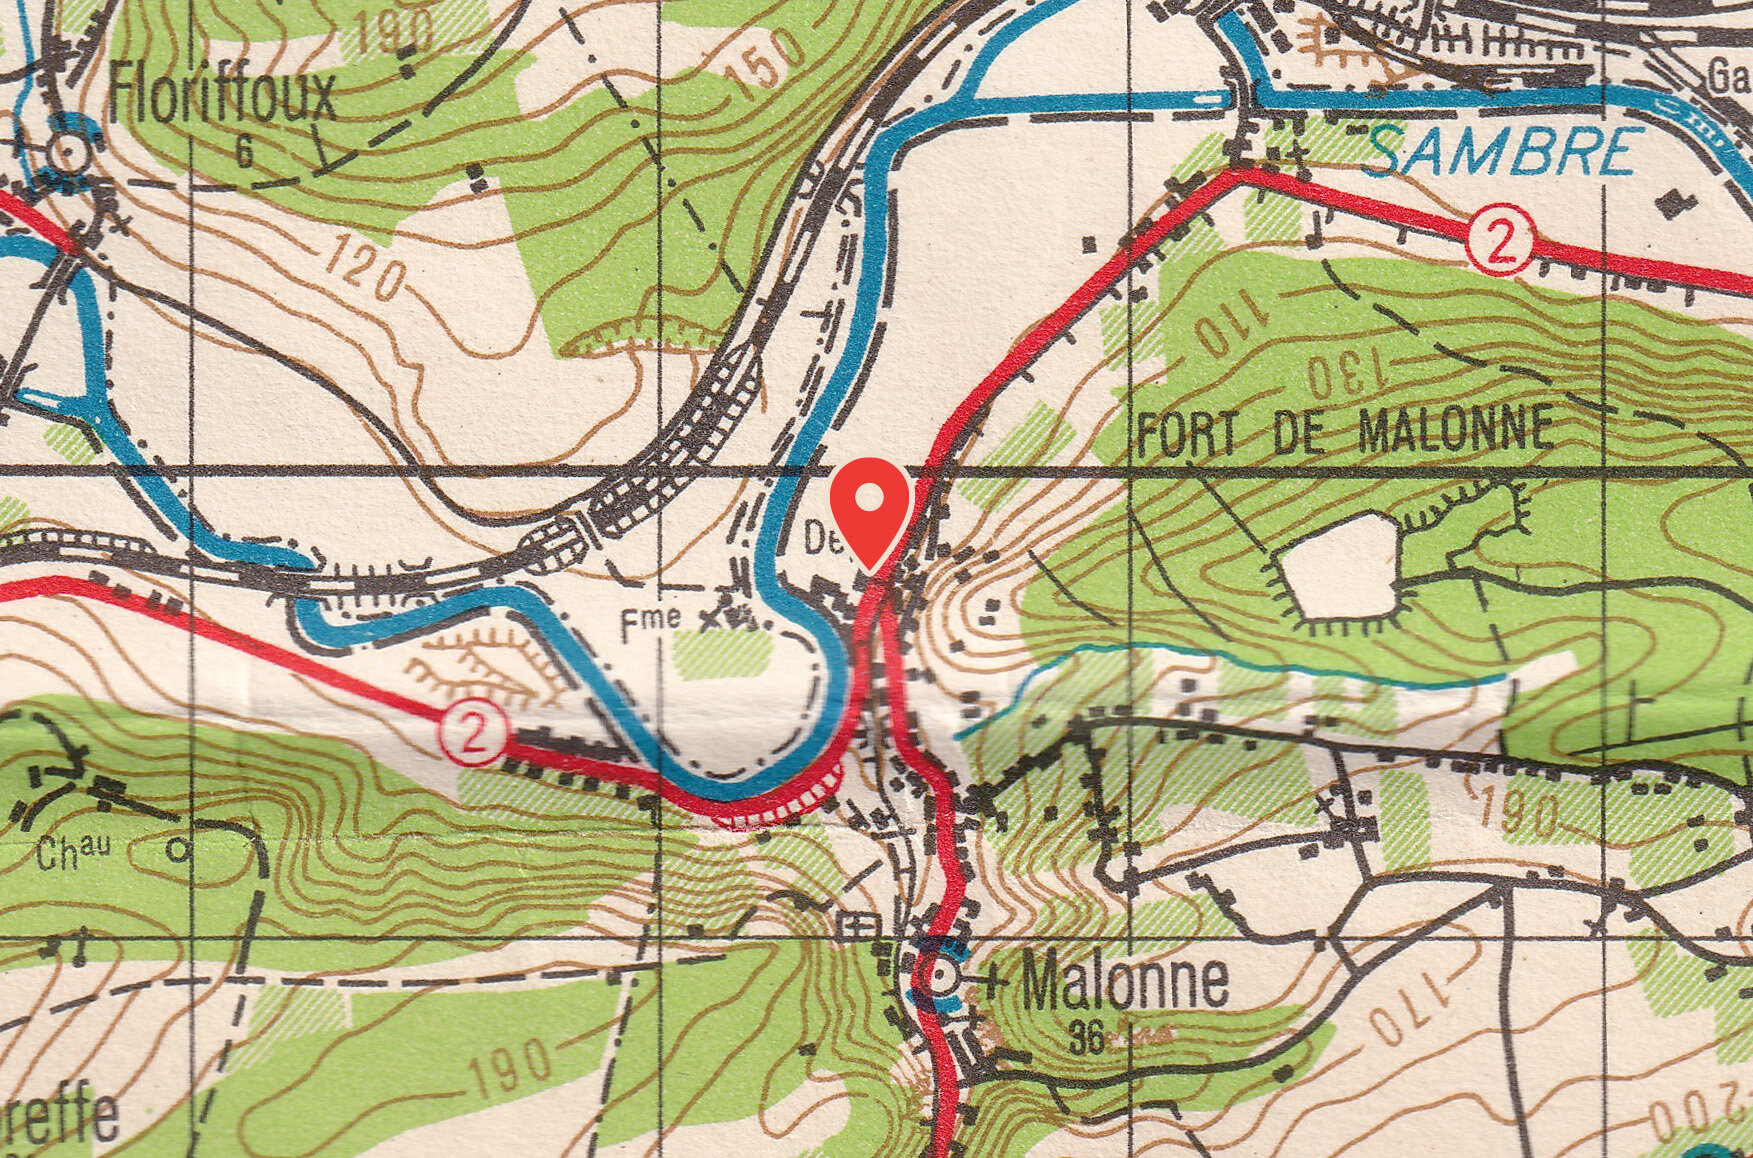 Route of the Sambre, 1936 (Ellipsoid of Delambre)